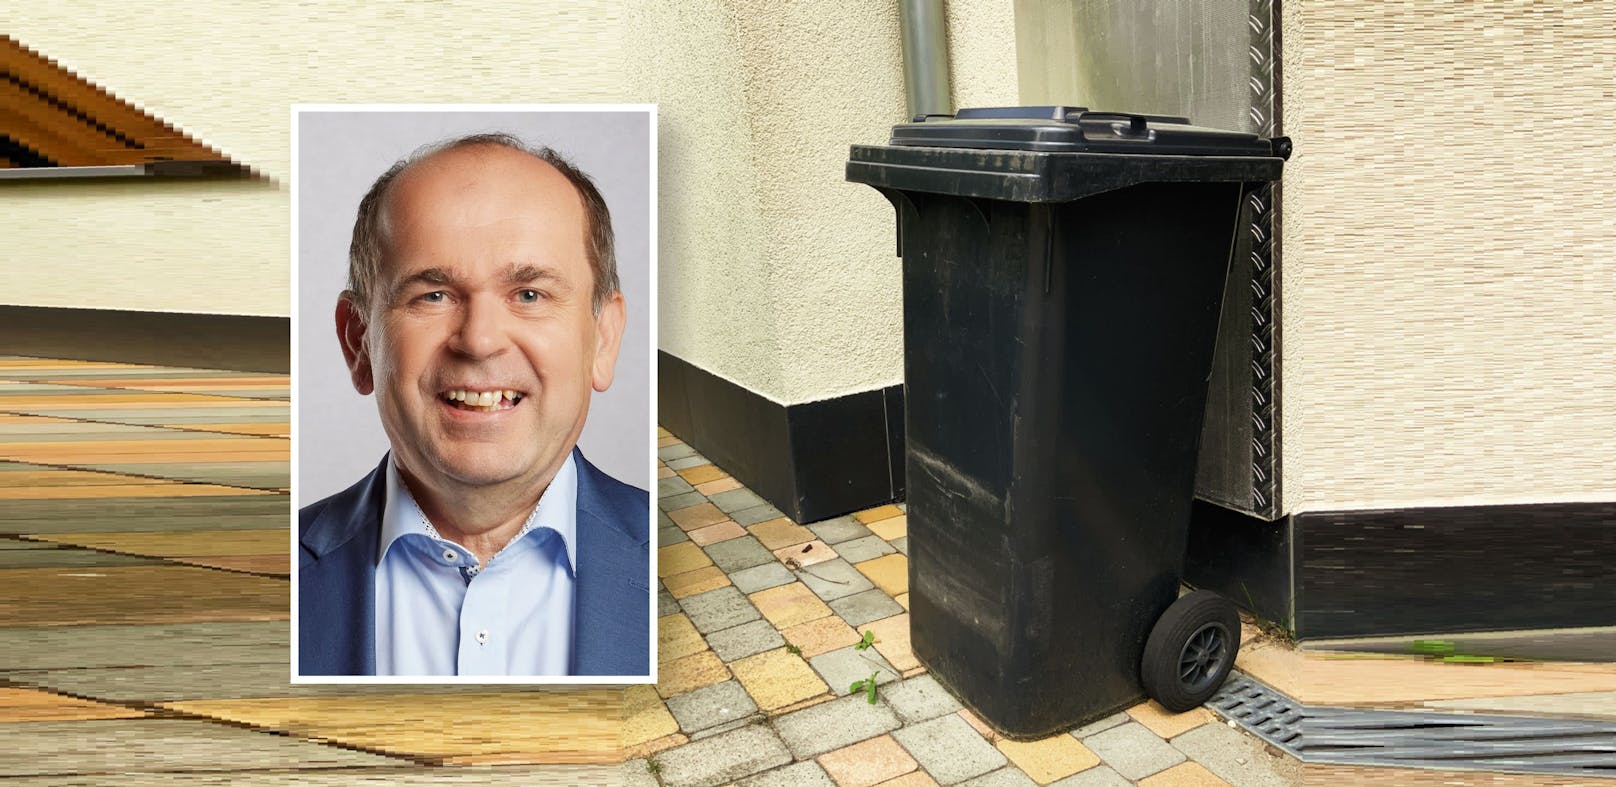 Erstmals seit 1998 werden die Abfallgebühren in Hörsching demnächst erhöht. Für Bürgermeister Klaus Wahlmüller war dieser Schritt "unumgänglich".